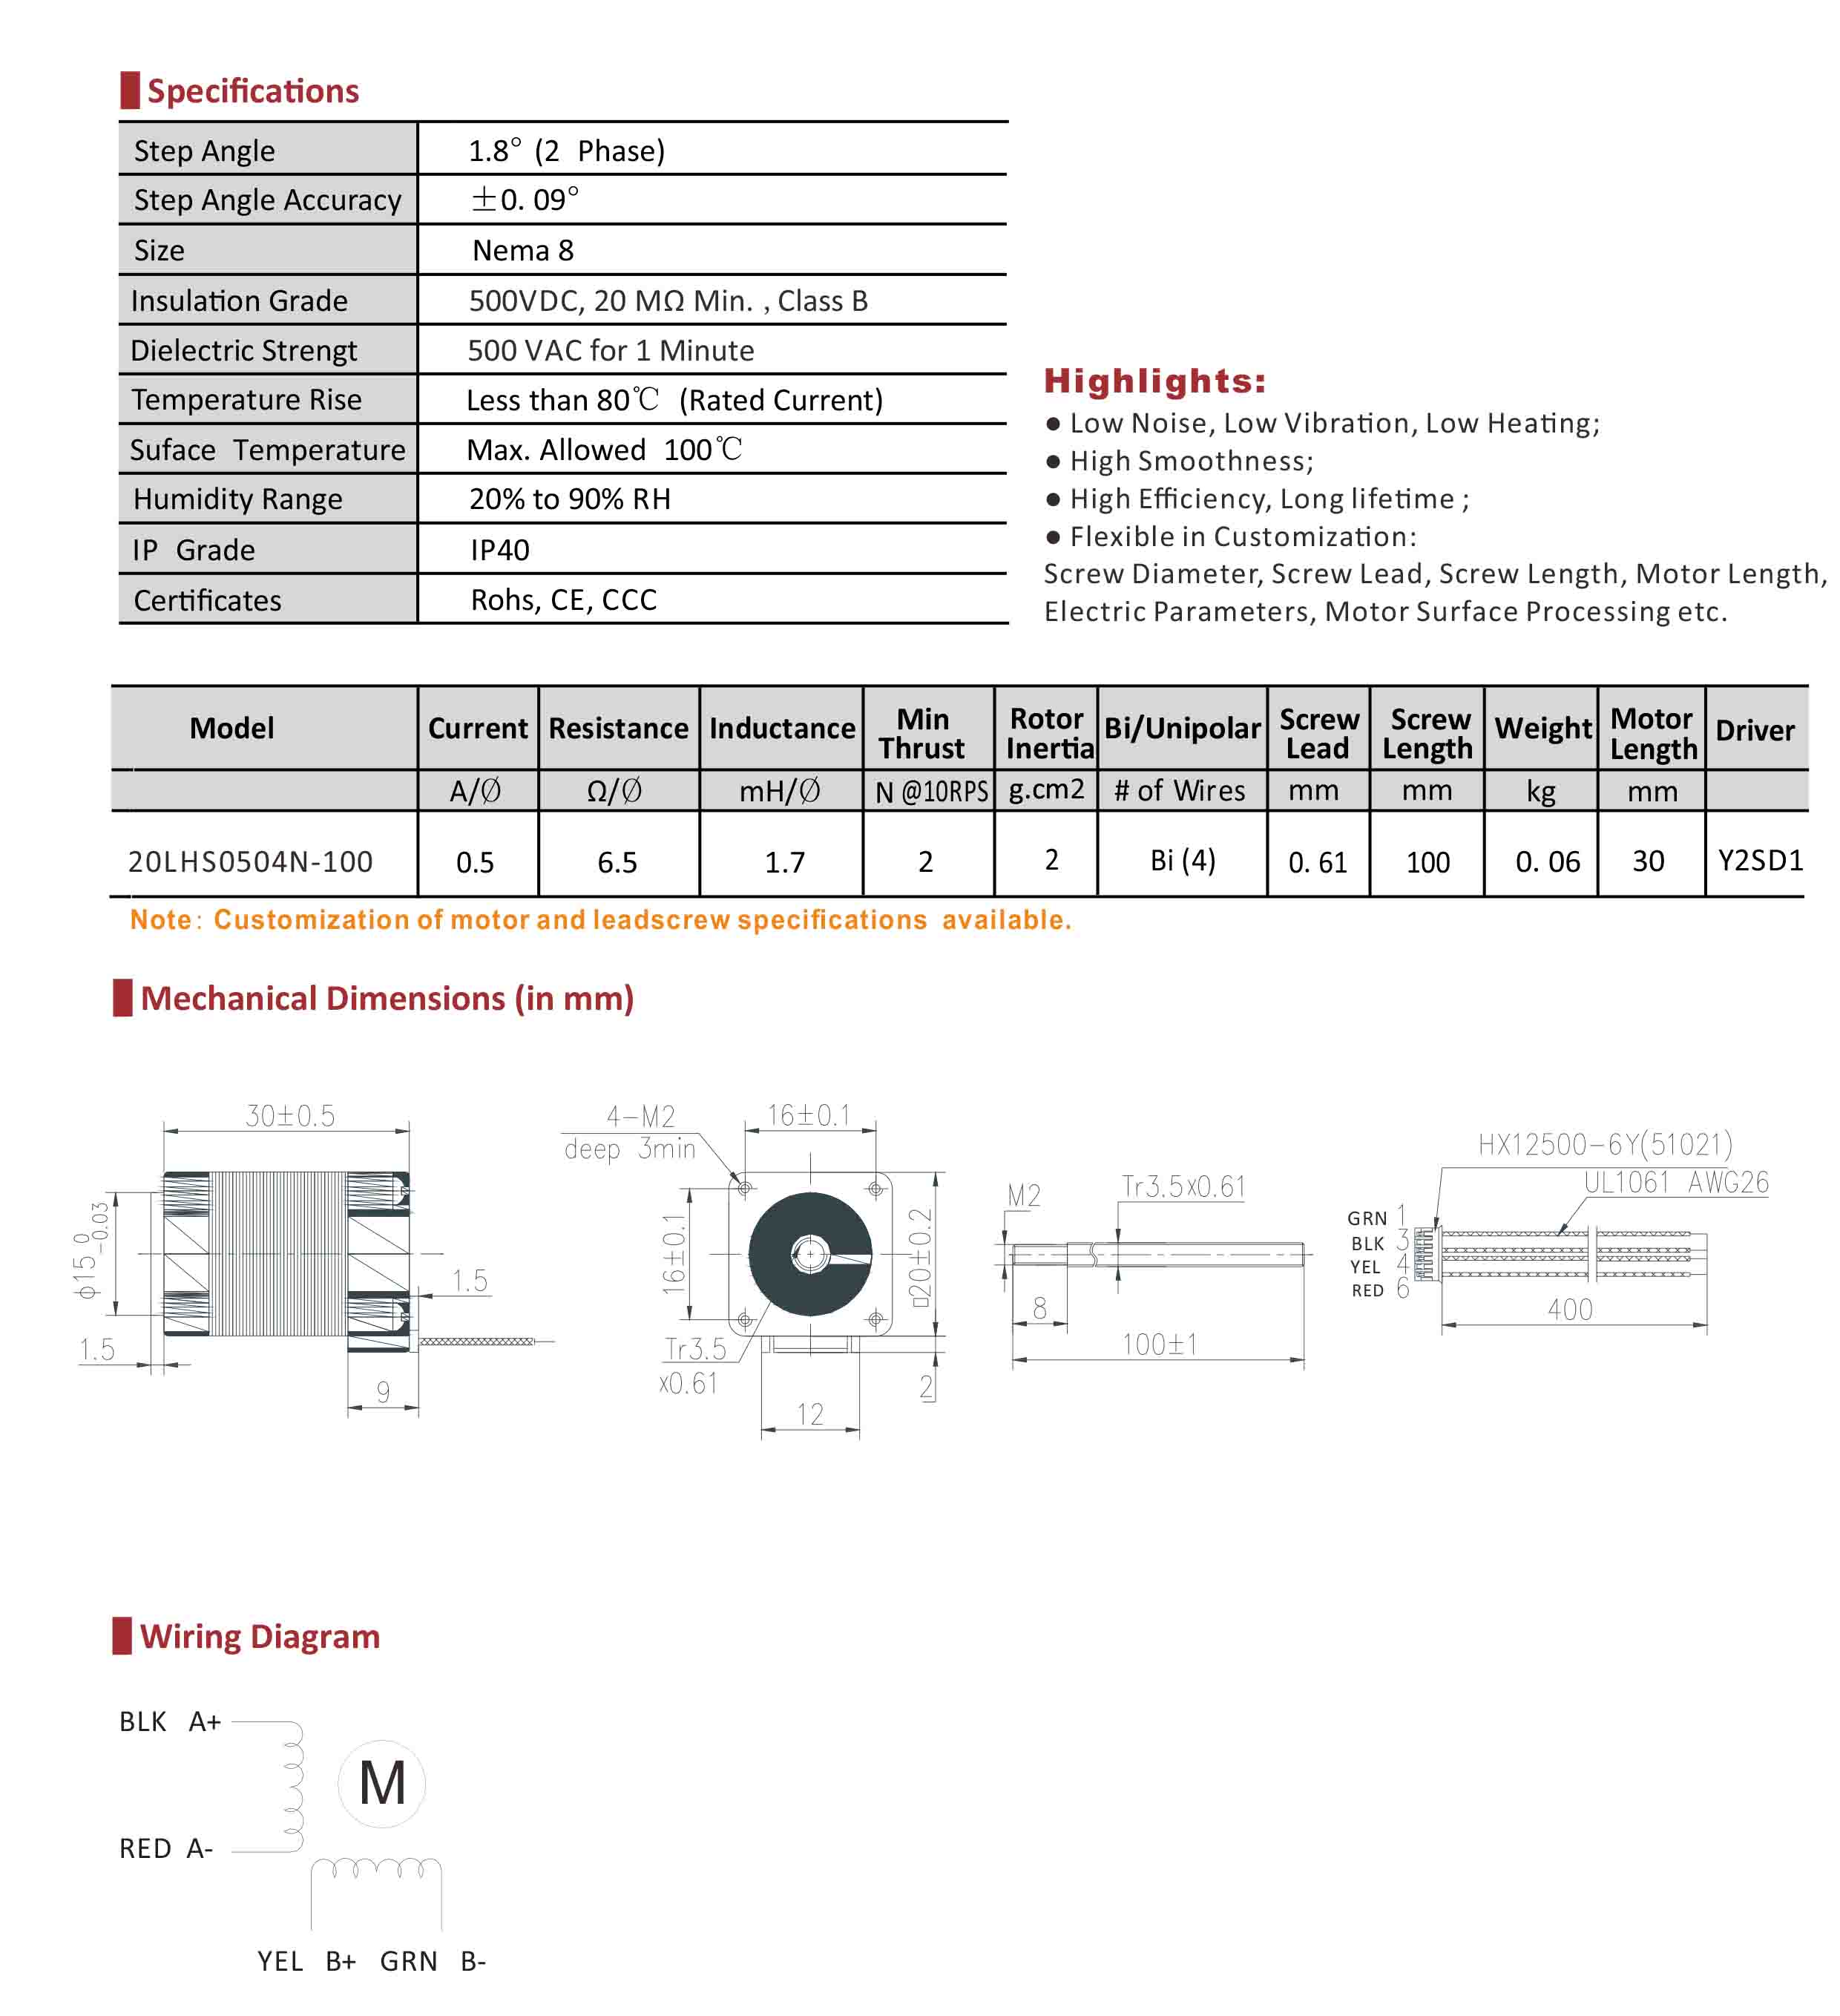 20LHS054N-100 No-captive Hybrid Linear Stepper Motor Data Sheet.jpg